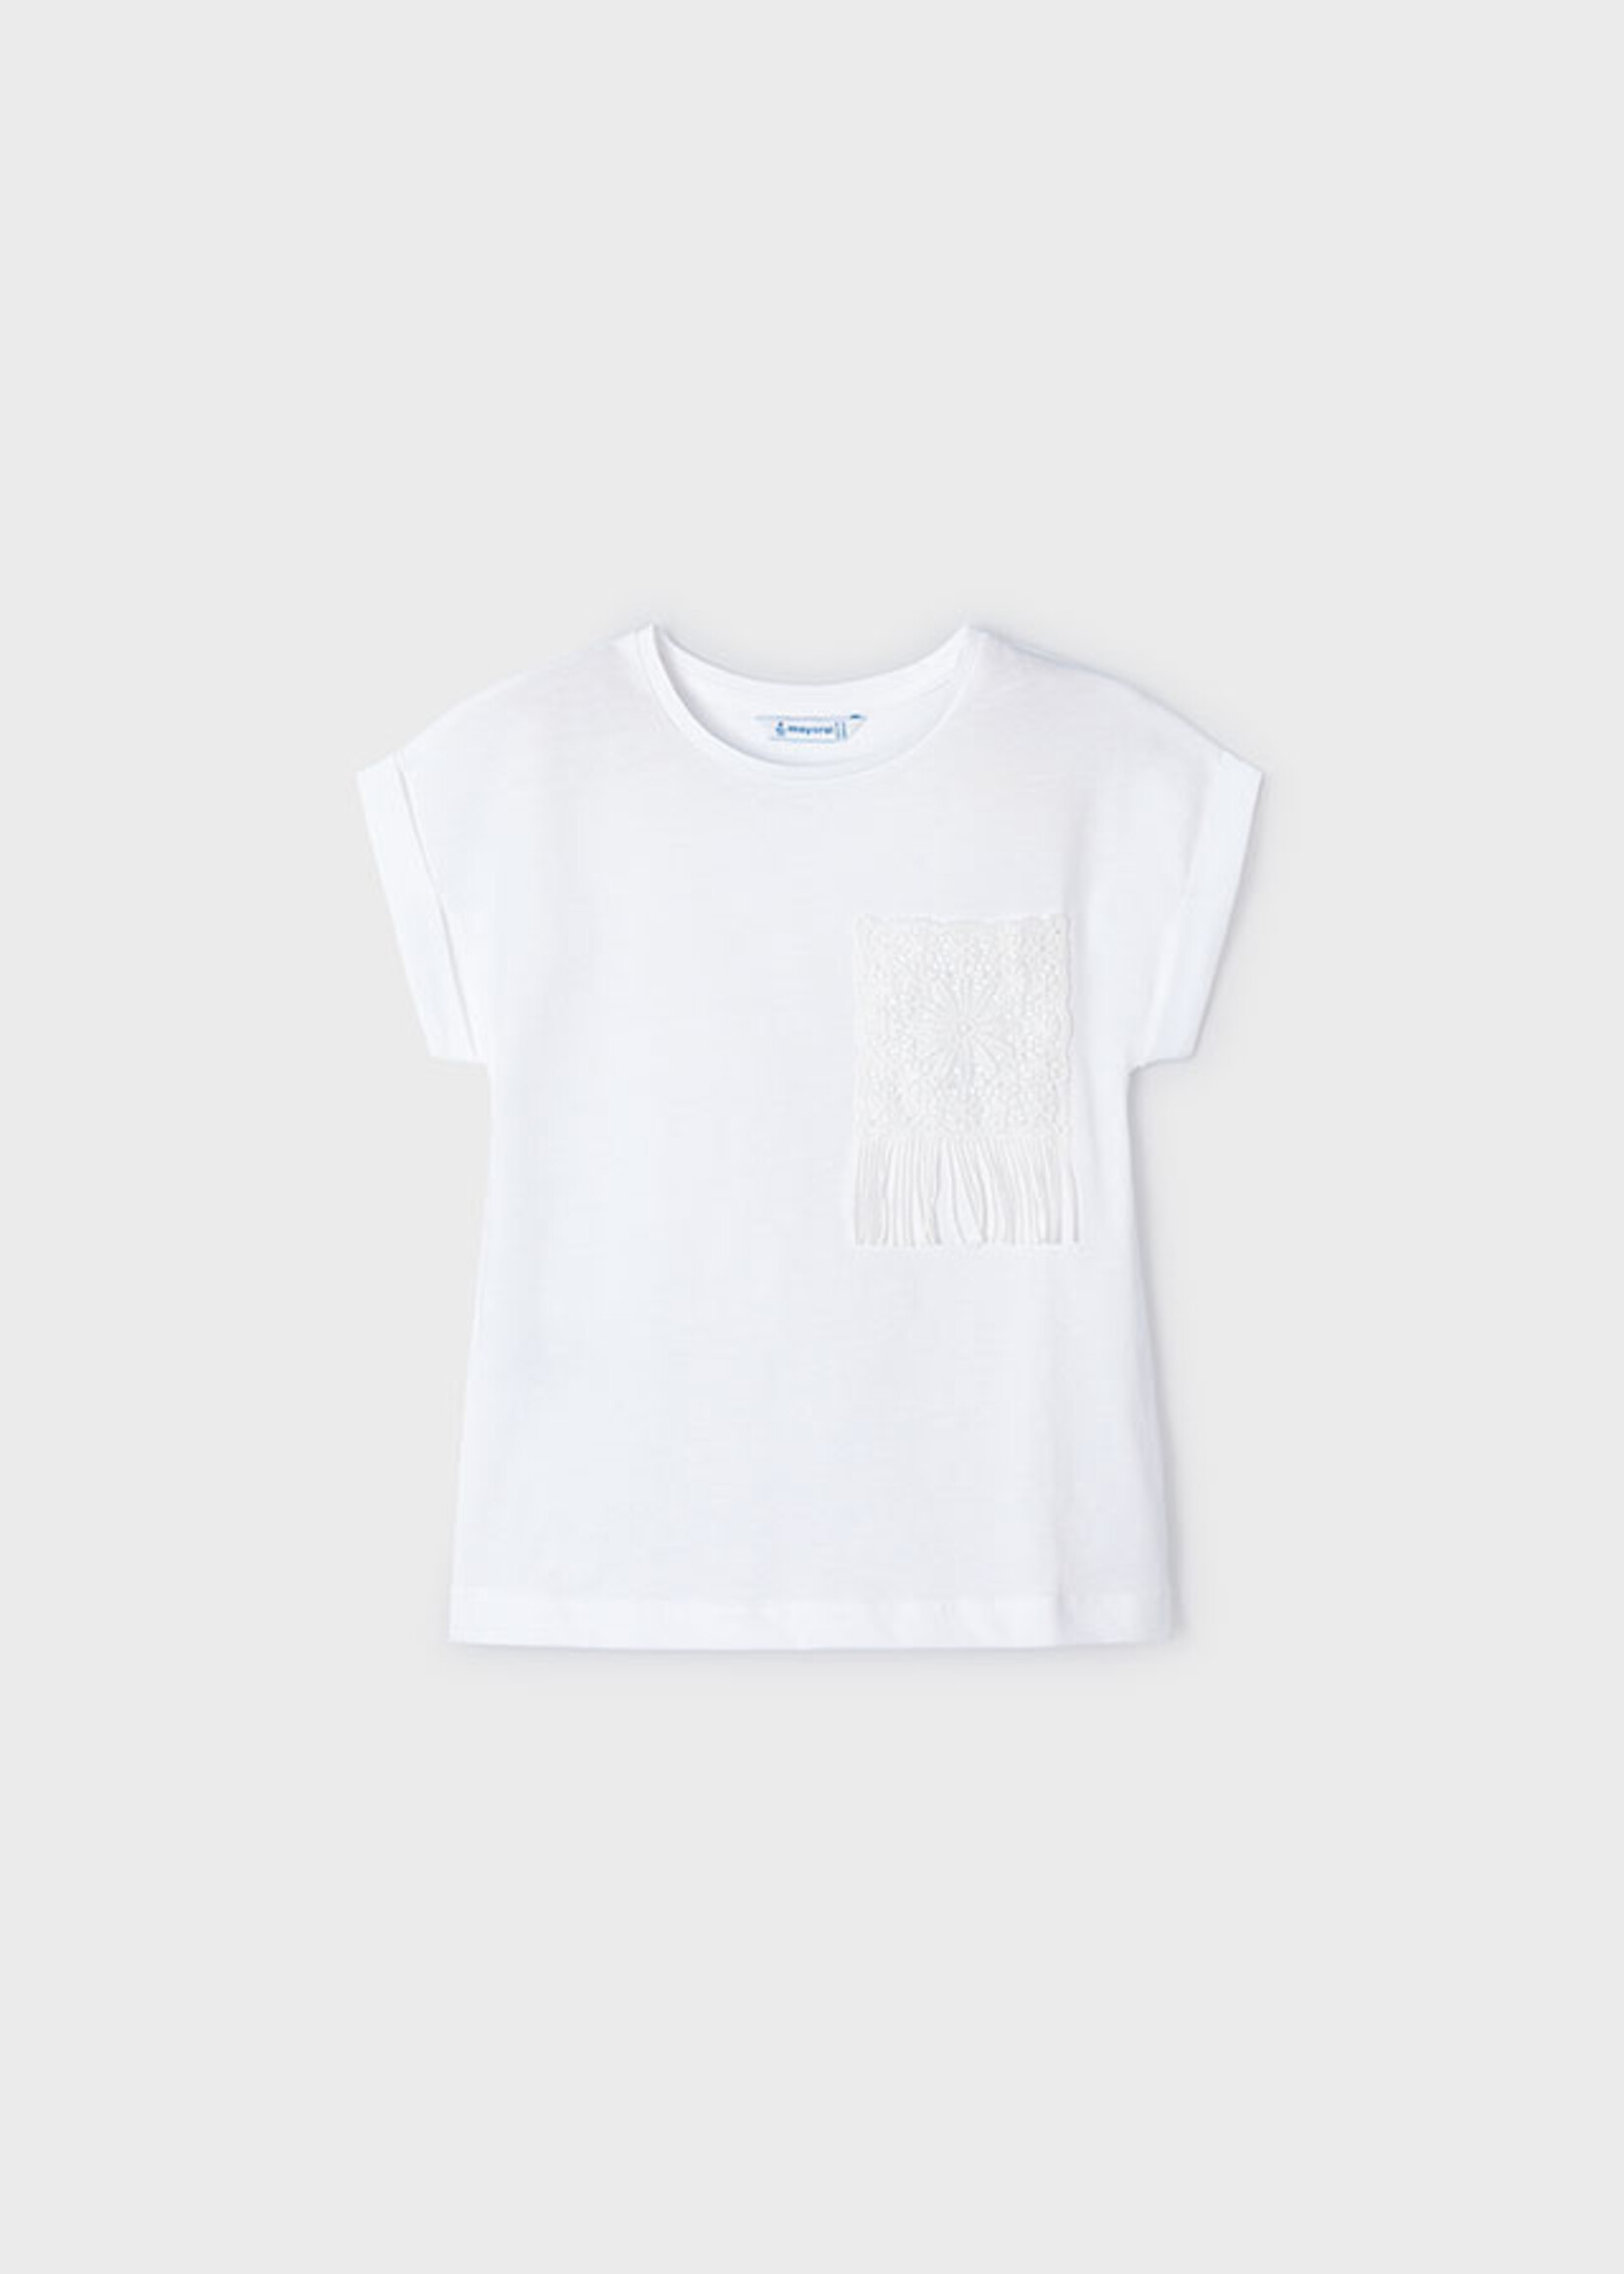 Mayoral Mini Girl            3087 S/s crochet t-shirt           White